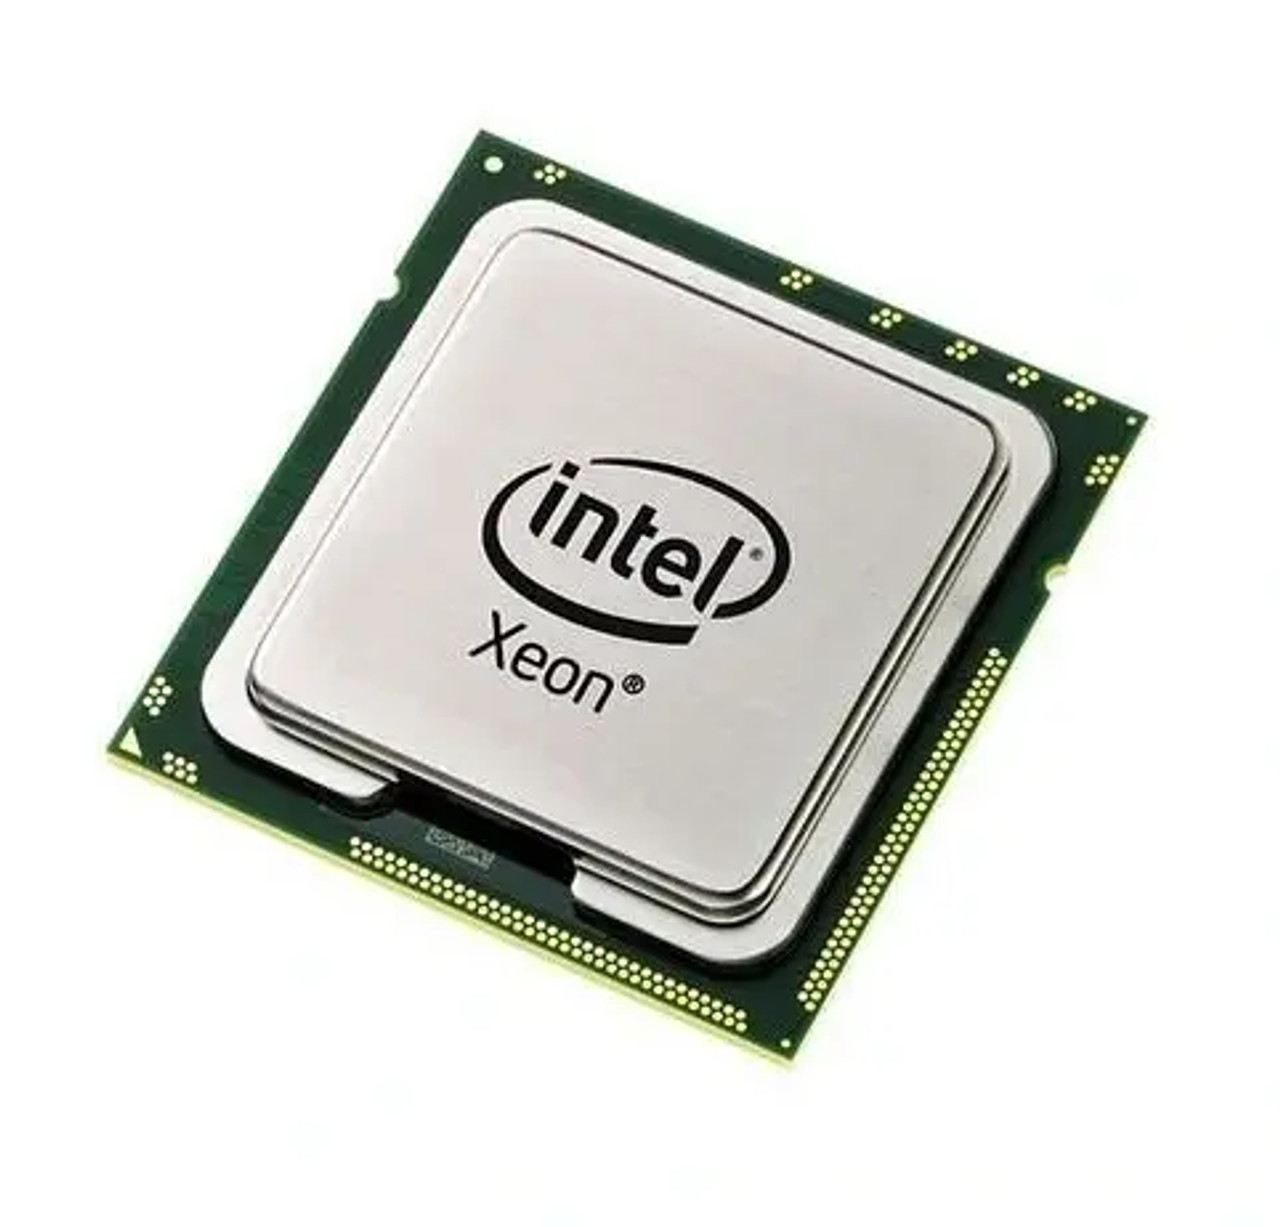 371-4388 | Sun | 3.50GHz 1333MHz FSB 6MB L2 Cache Intel Xeon X5270 Dual Core Processor